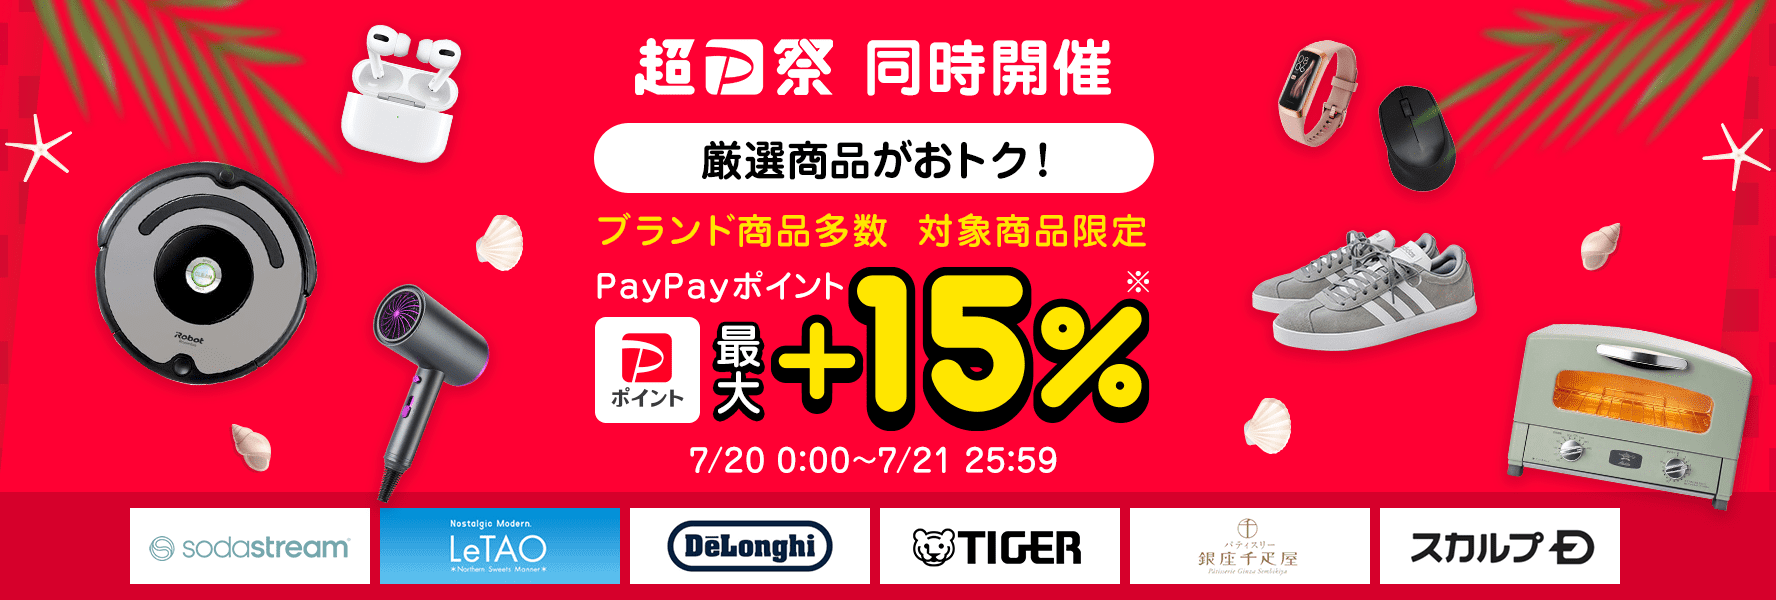 PayPay最大+15%「厳選アイテムポイントキャンペーン」